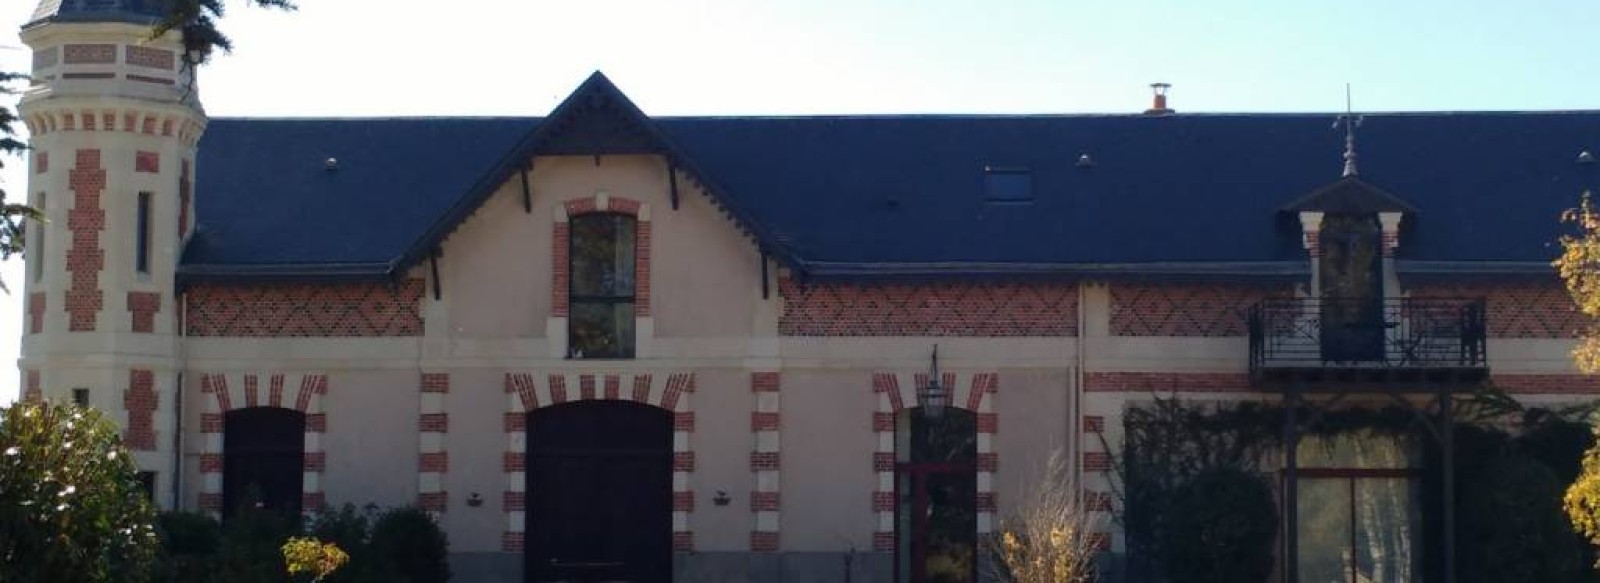 Gite Cabernet Chateau de Montgueret (8 - 10 personnes)